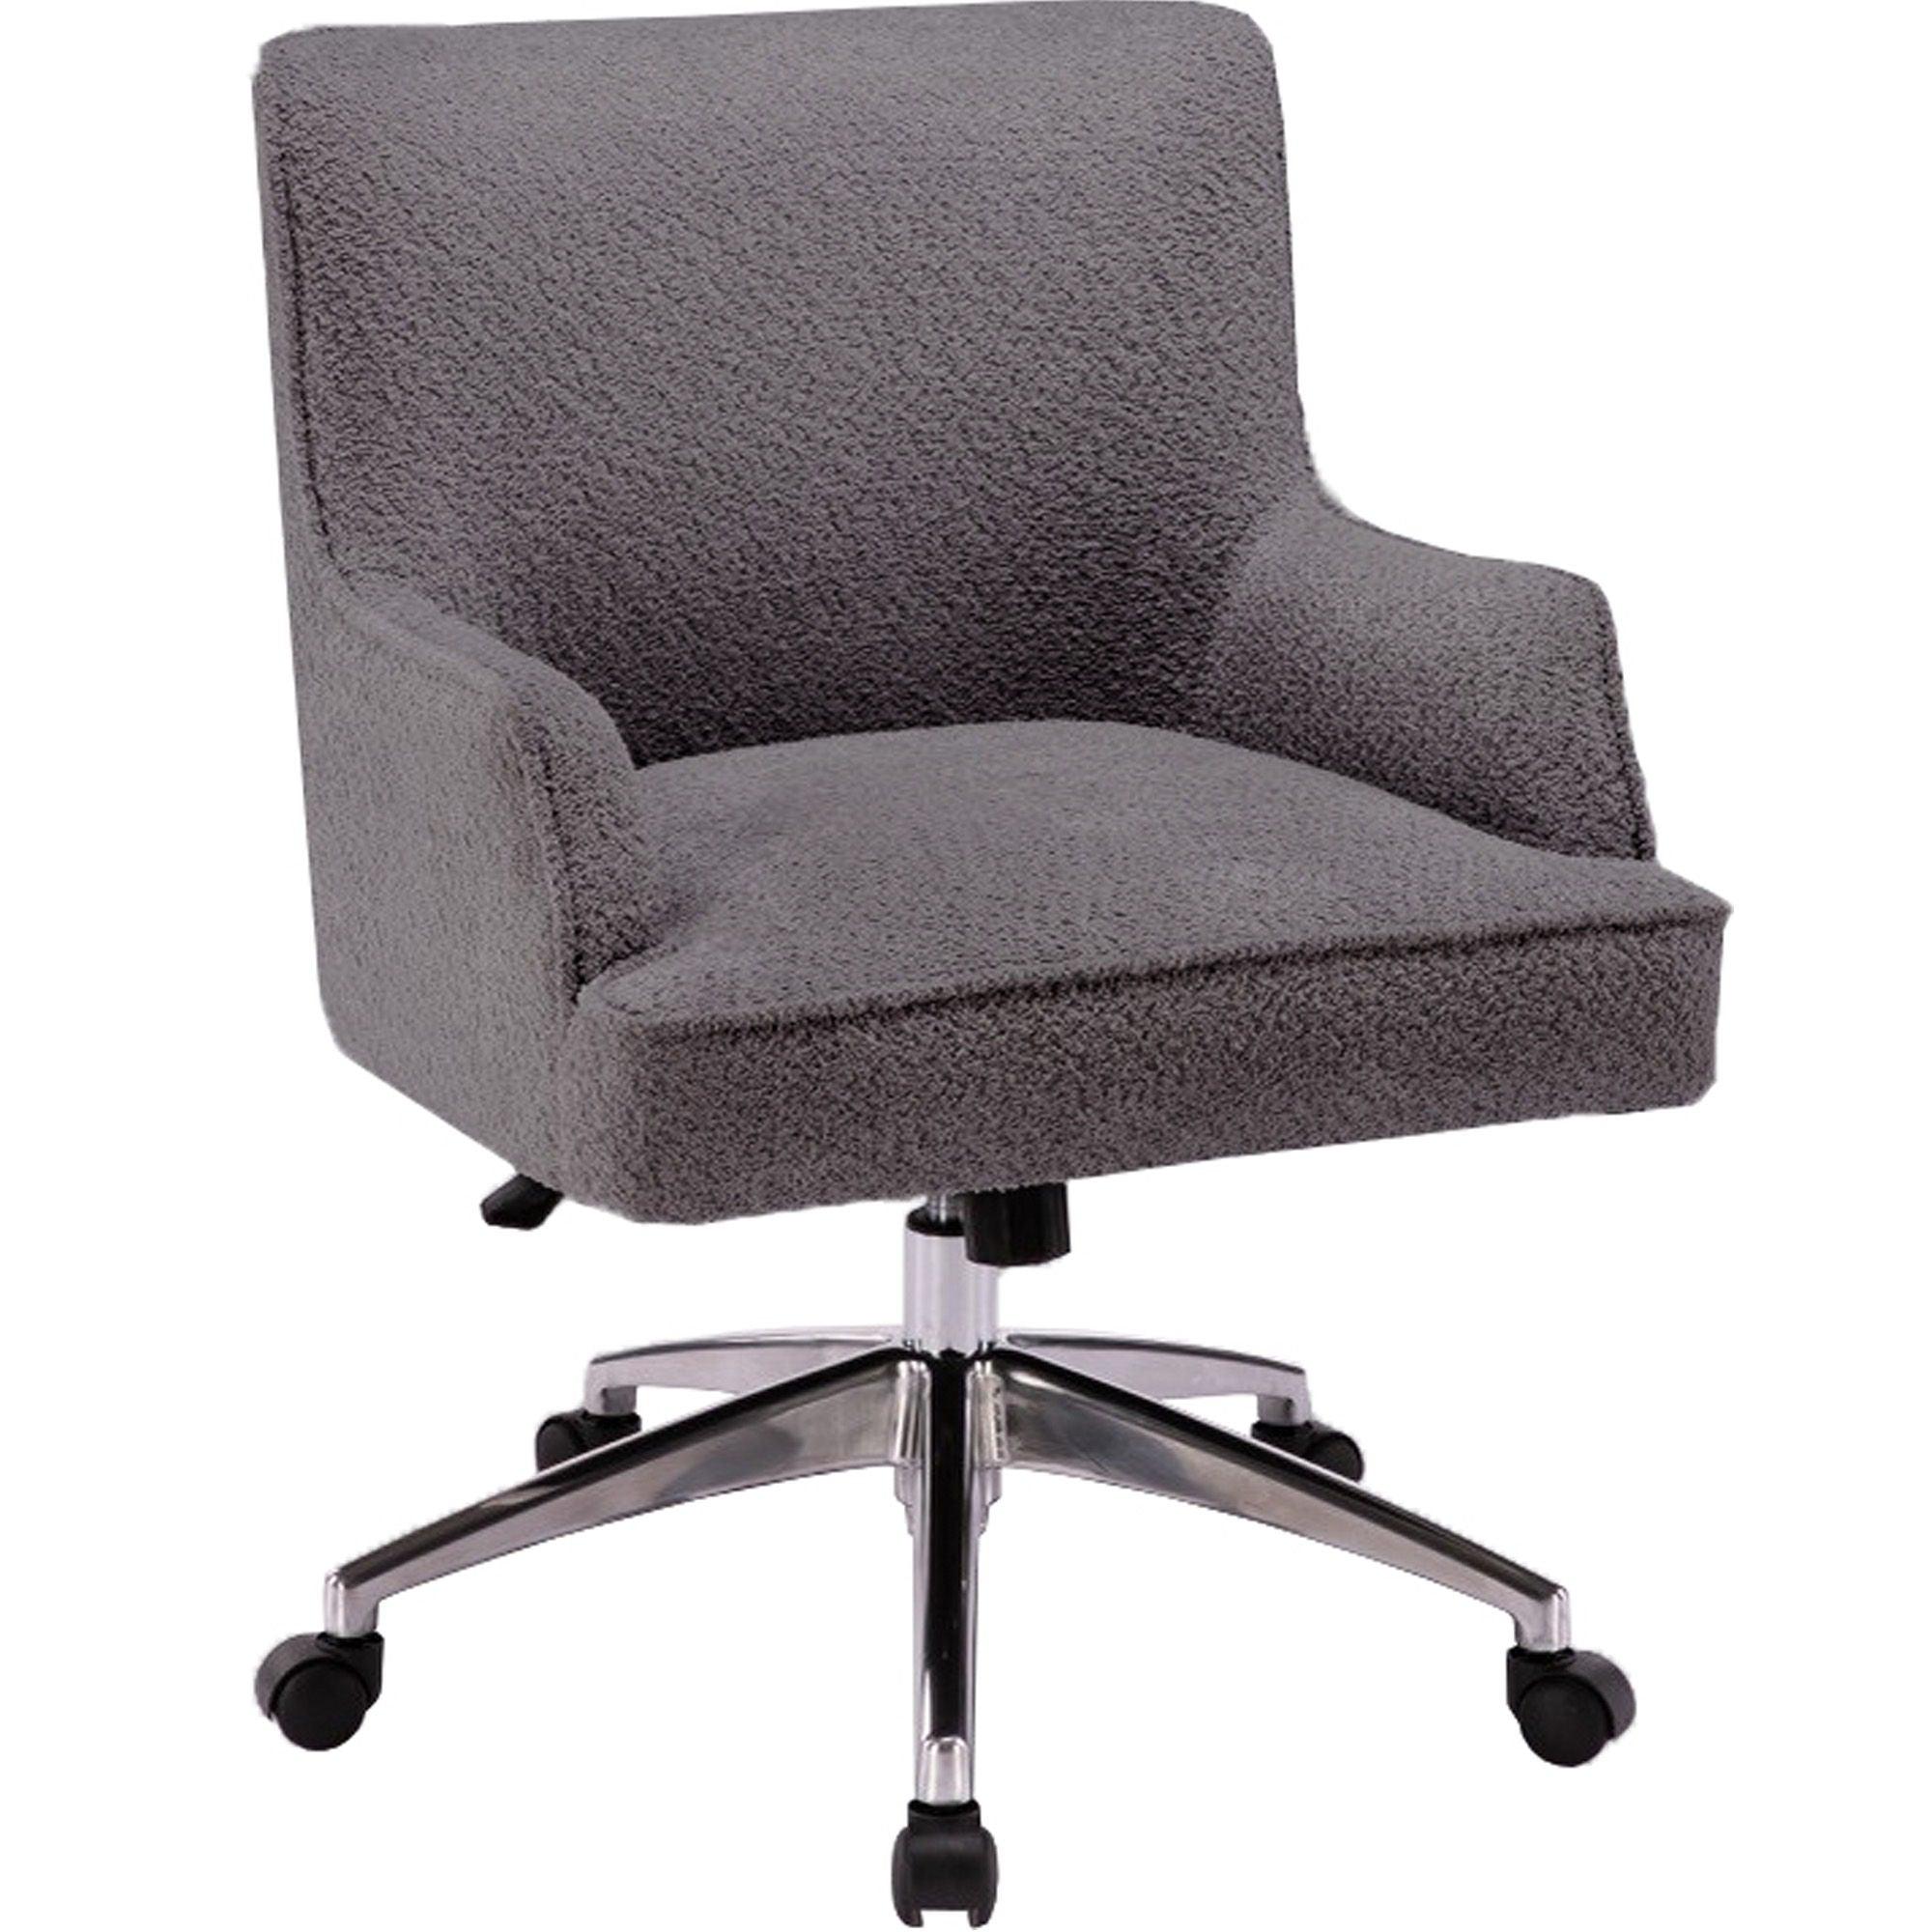 Parker Living - Dc504 - Desk Chair - 5th Avenue Furniture